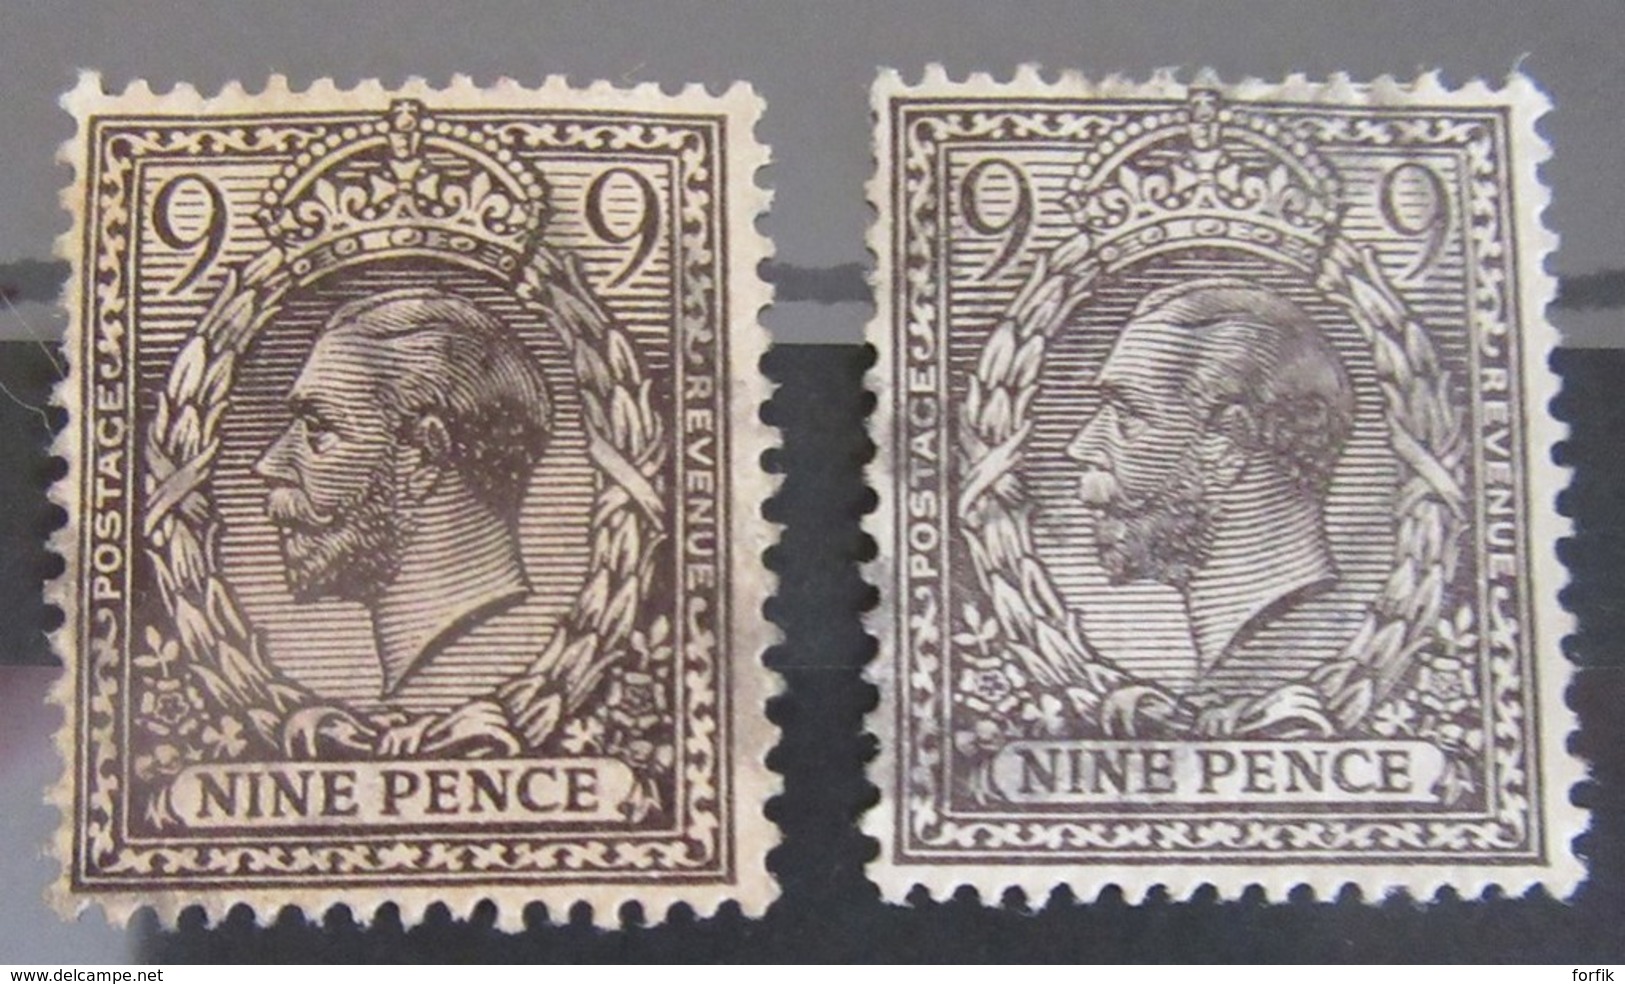 Grande-Bretagne - Collection de 86 timbres types Victoria et George V dont forte cote n°86 / 87 - Oblitérés